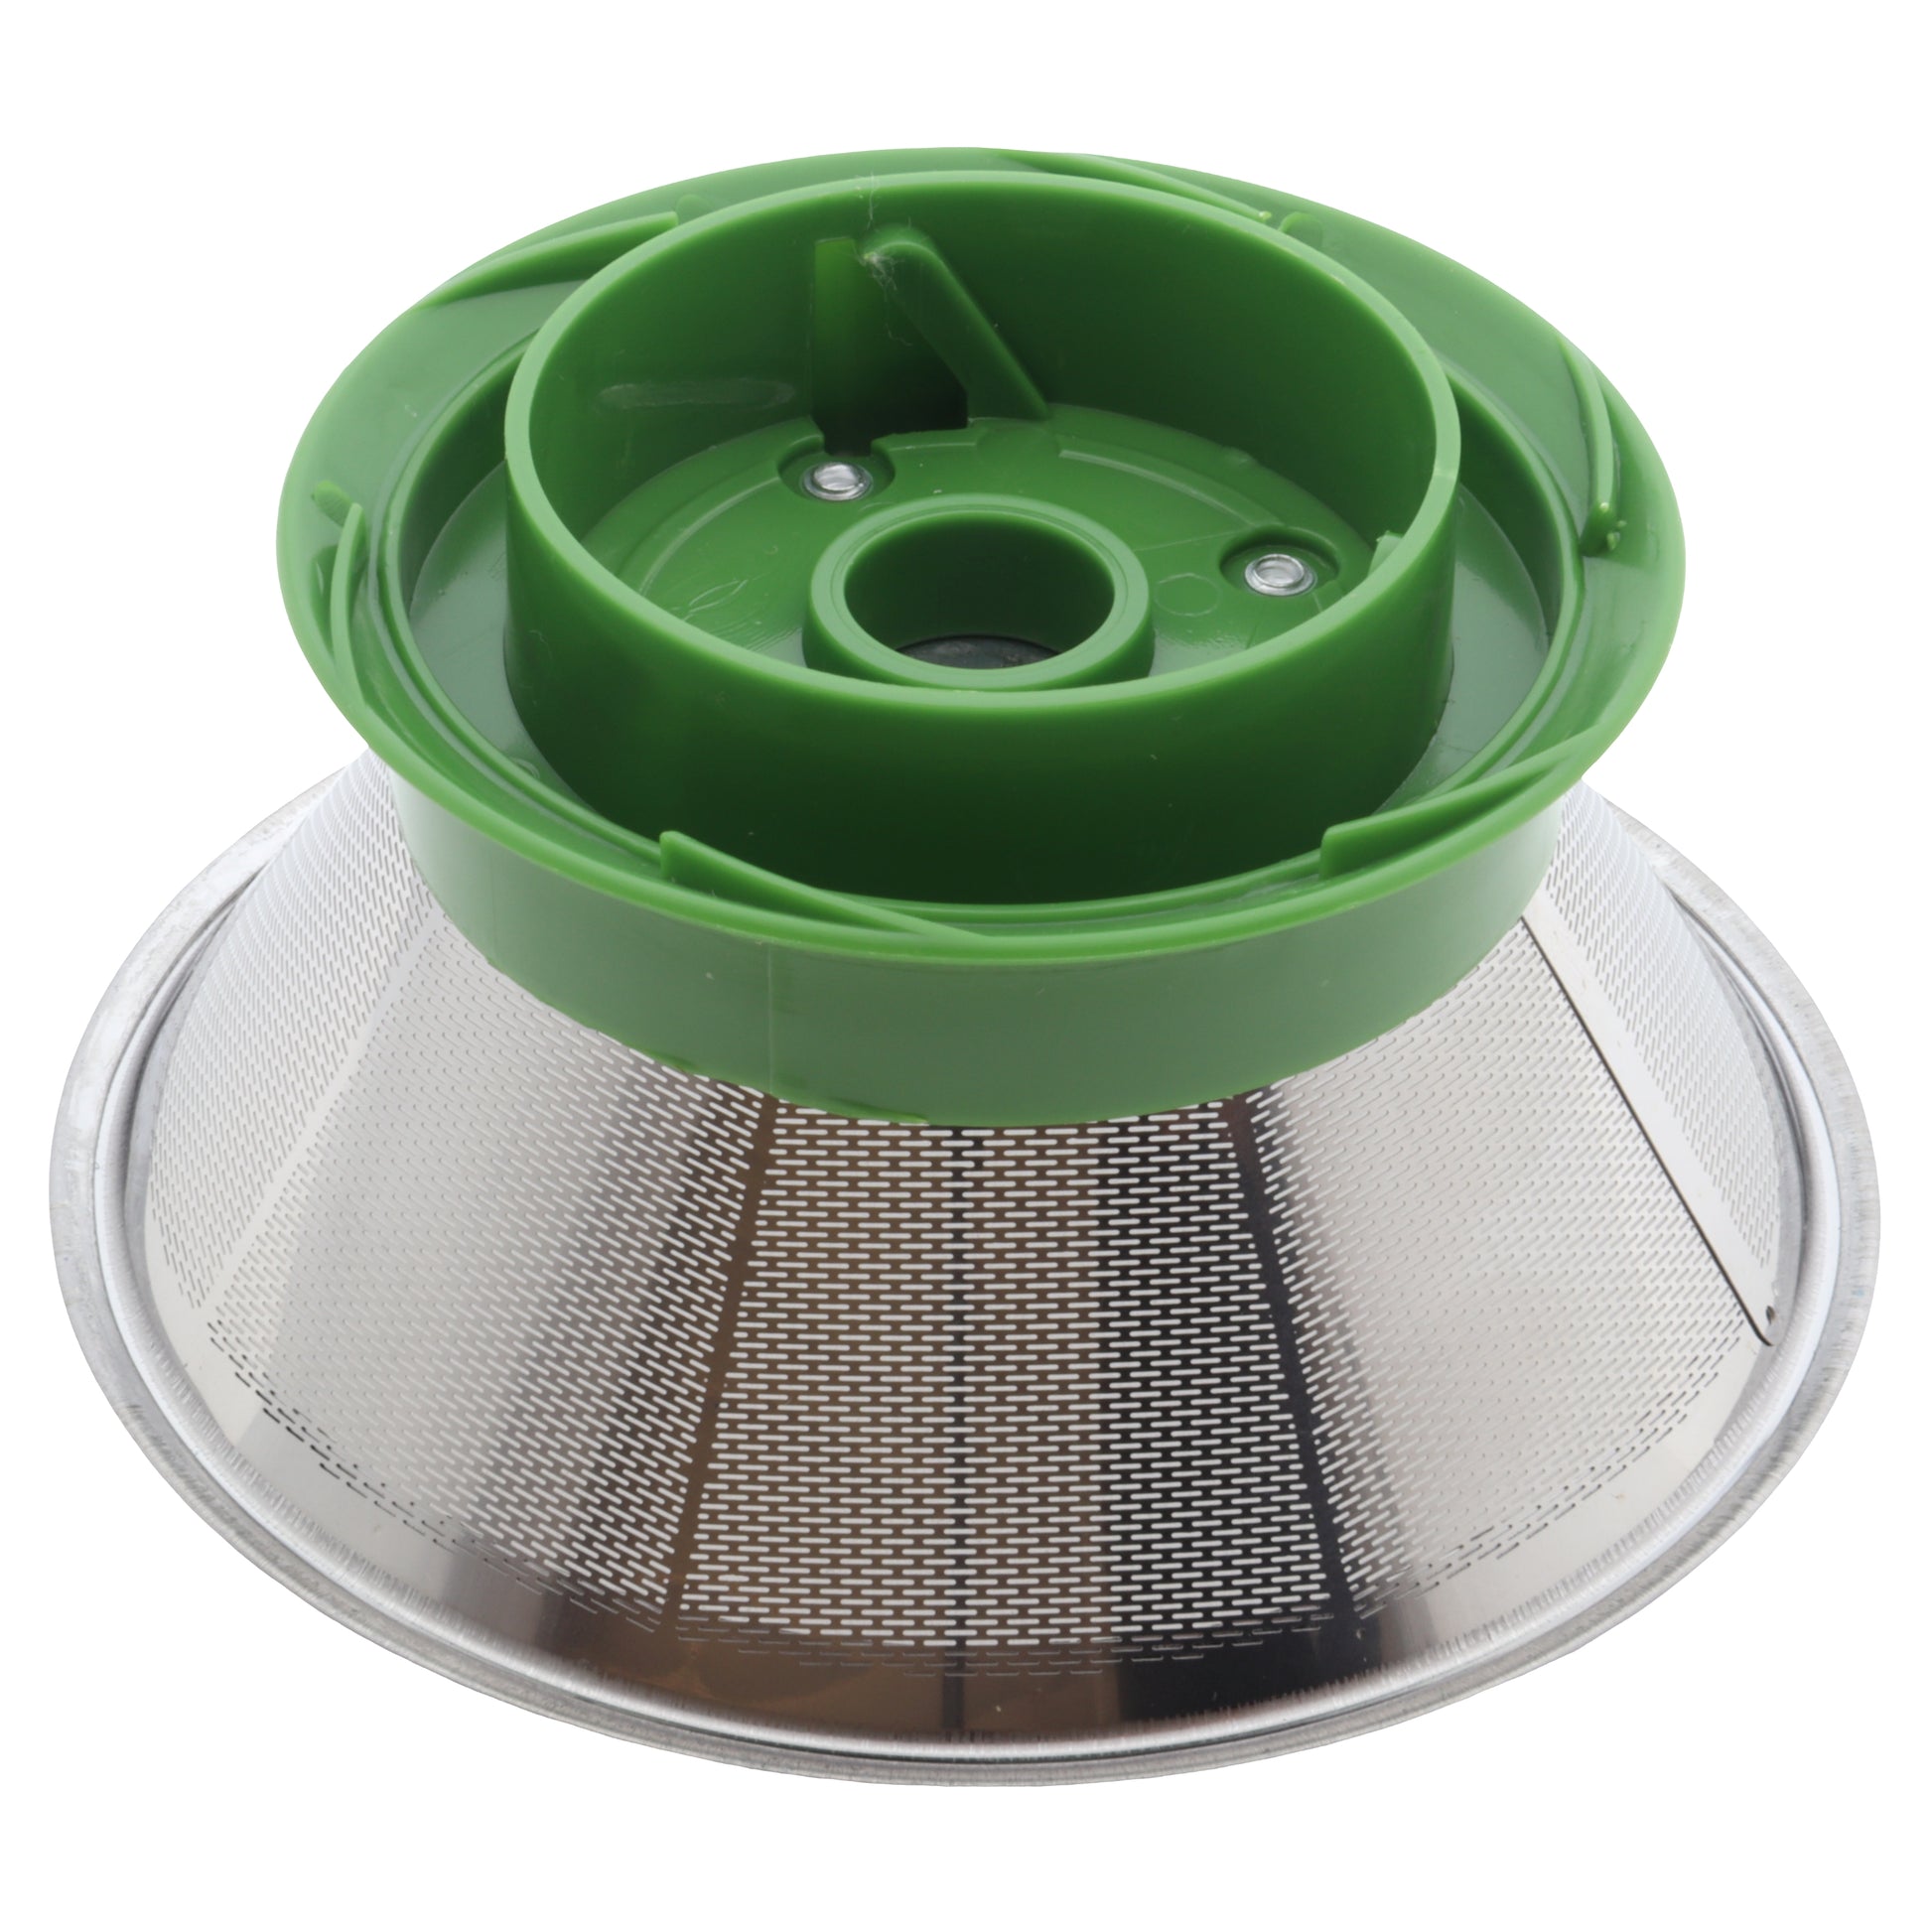 Taurus filtro setaccio metallico verde centrifuga 924683 Liquafresh NT-0414